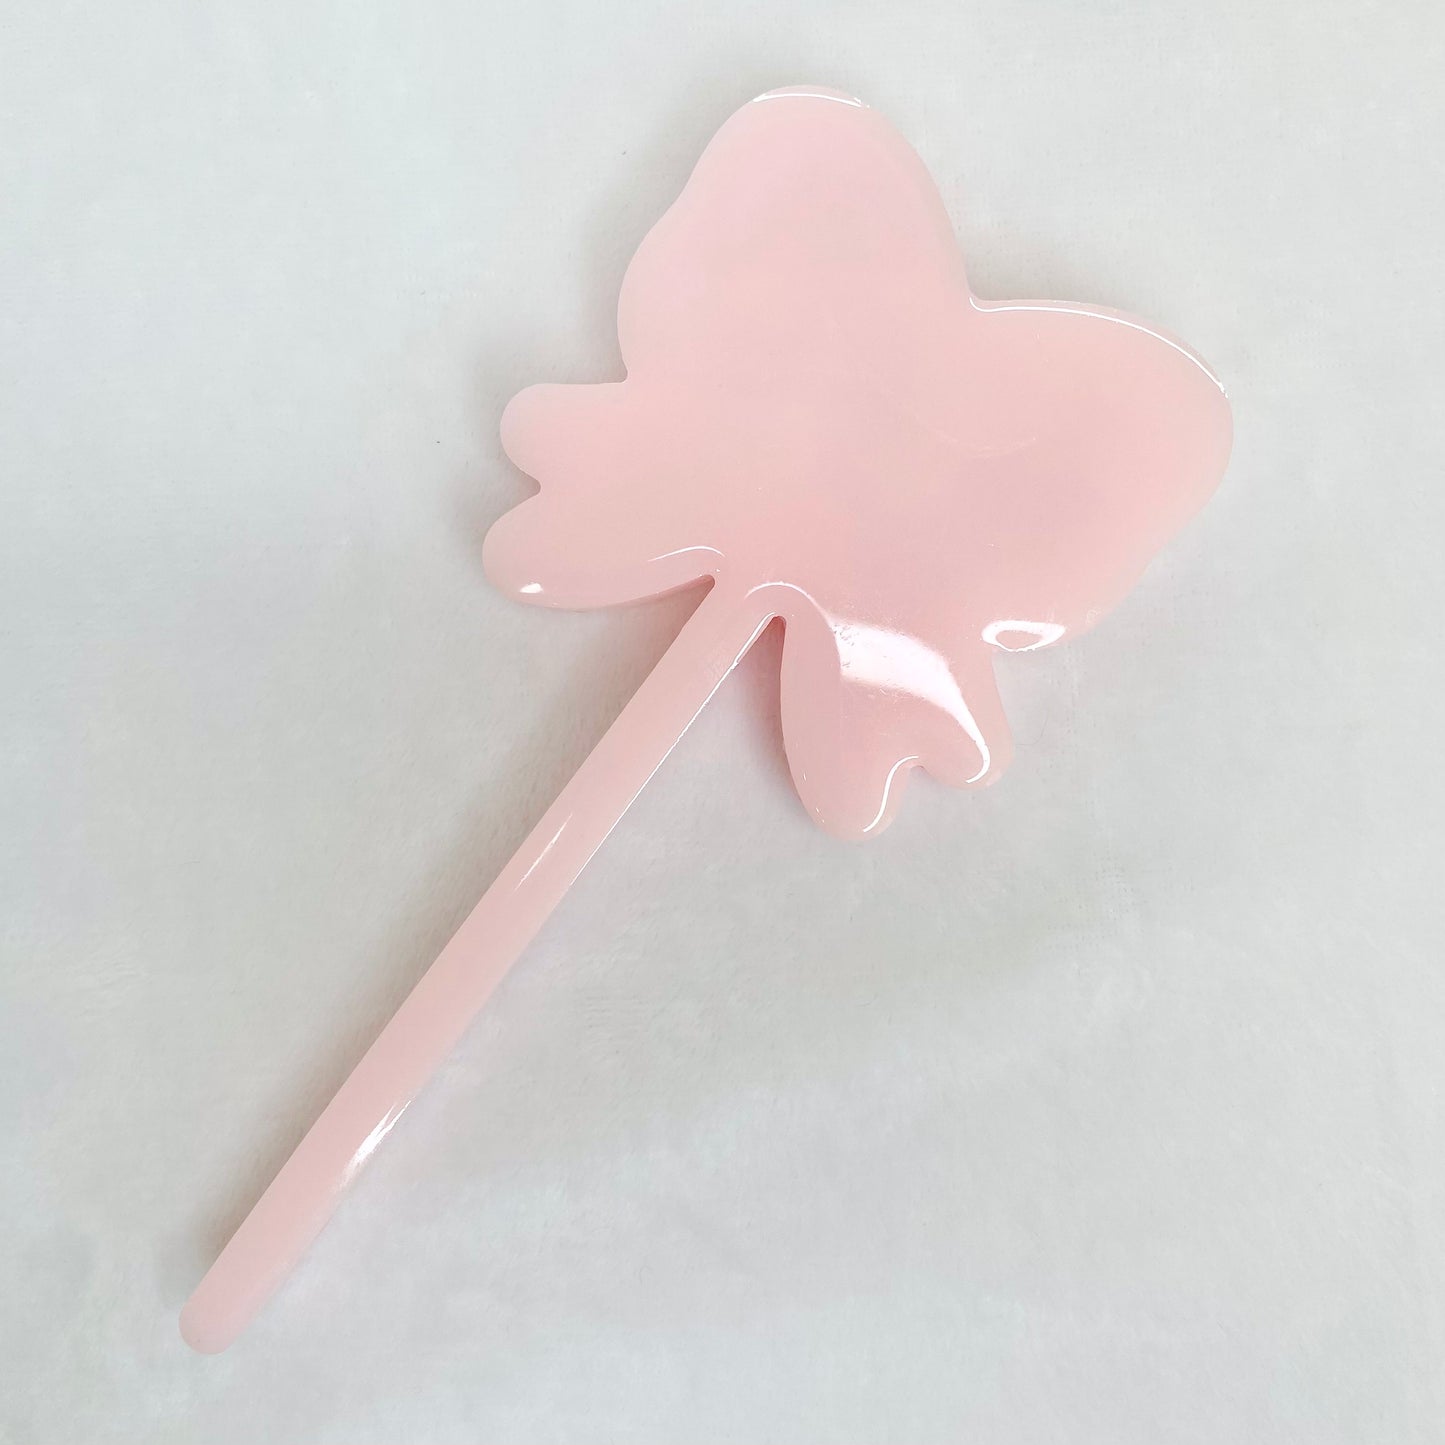 Pretty in Pink Sakura dry wand